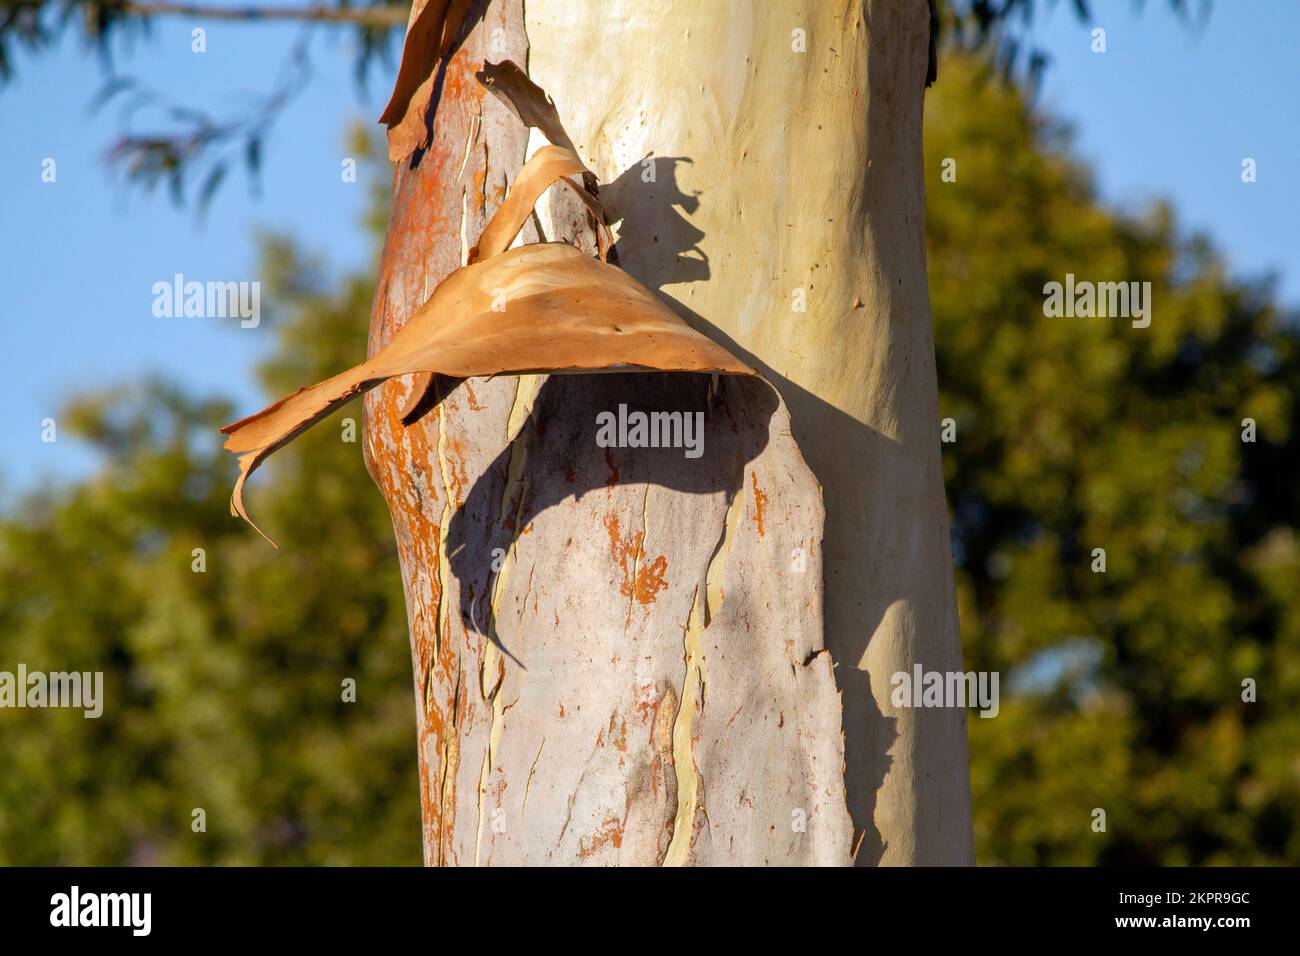 Bark peeling off from the trunk of Eucalyptus tree in Sydney, New South Wales, Australia (Photo by Tara Chand Malhotra) Stock Photo